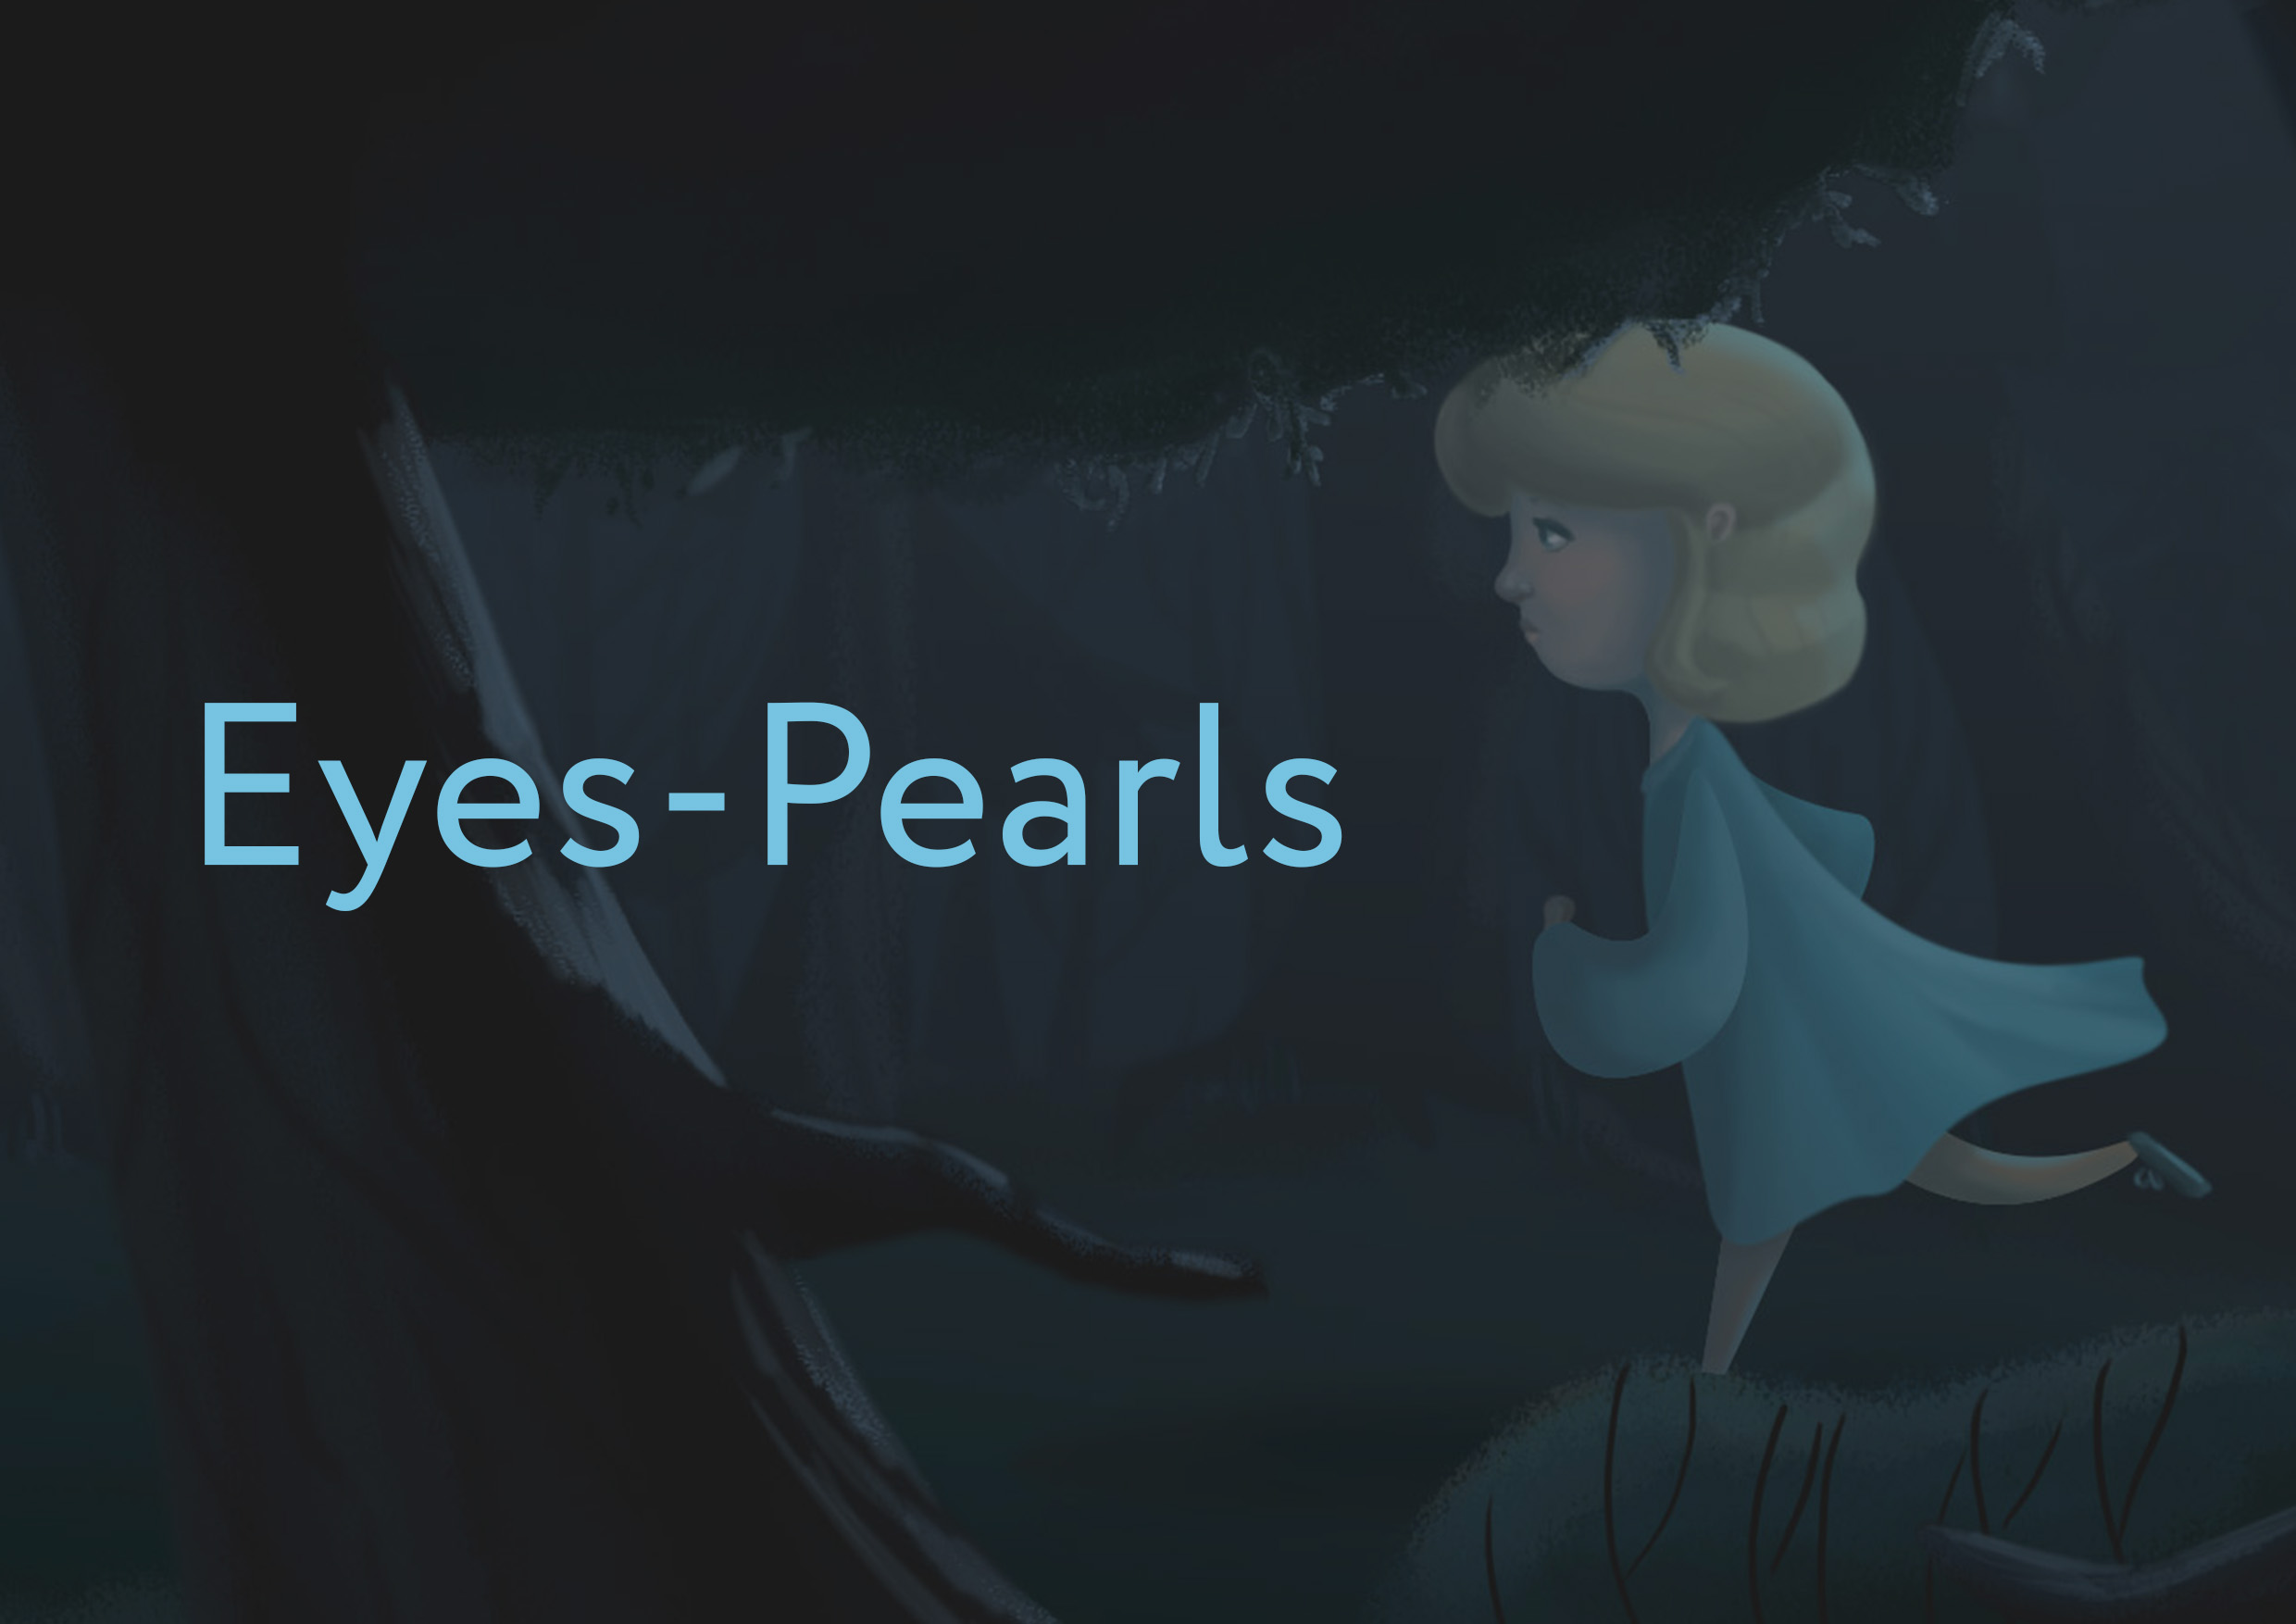 Eyes-Pearls